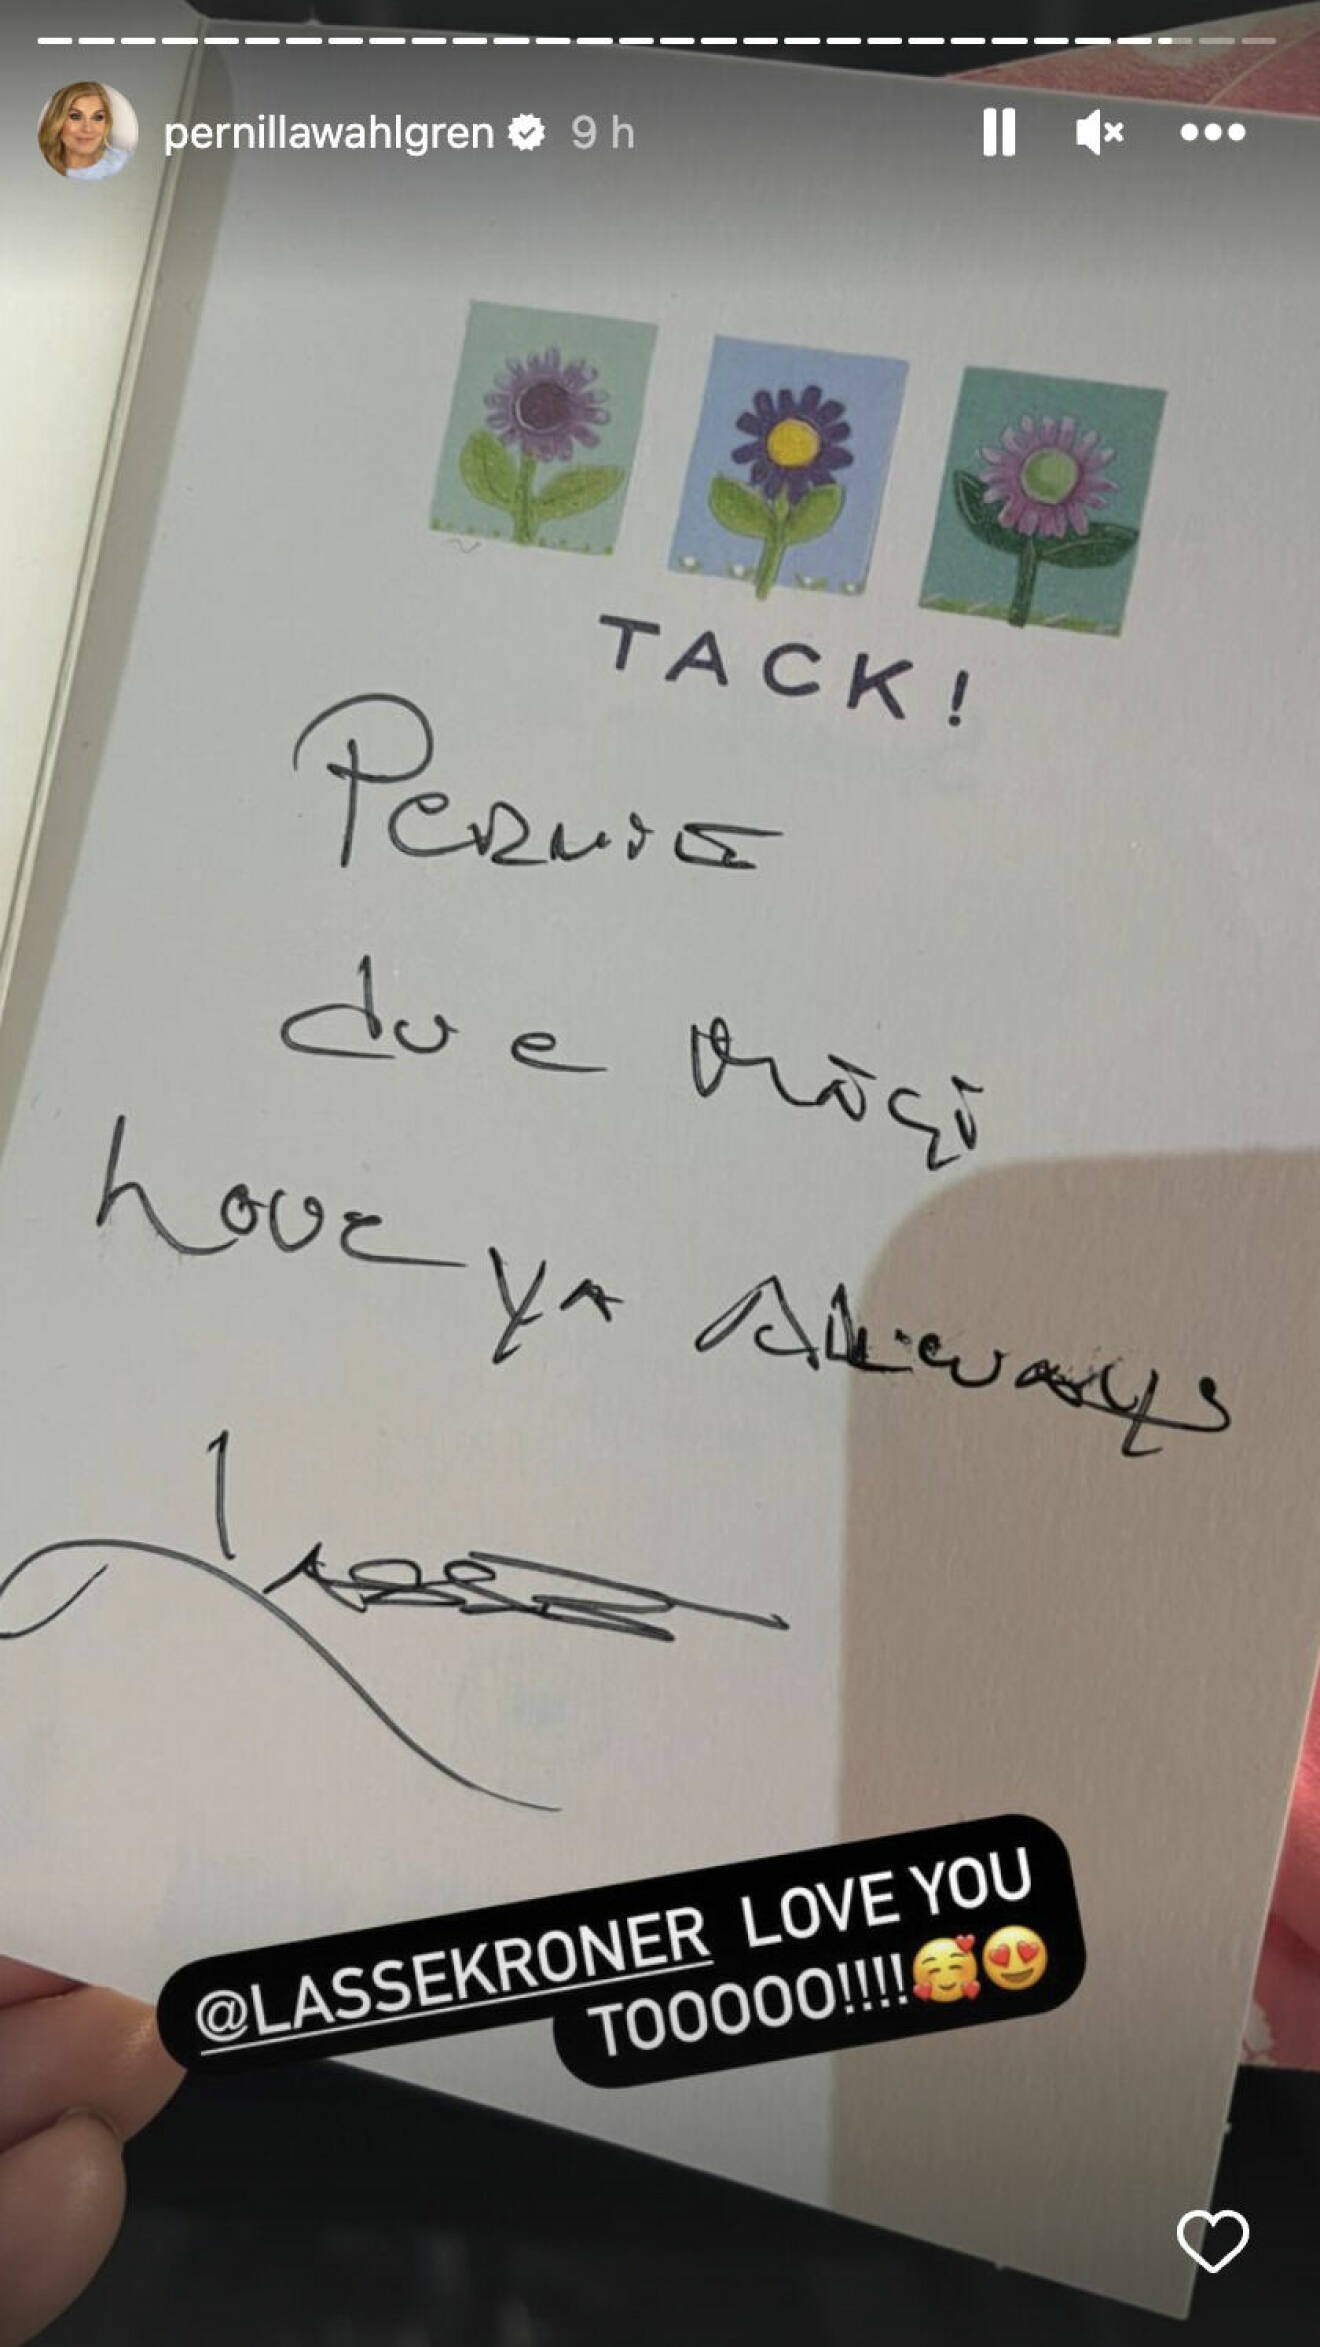 Pernilla Wahlgren visar upp ett kort från Lasse Kronér där han skrivit: "Pernie, du är bäst. Love you always. Lasse